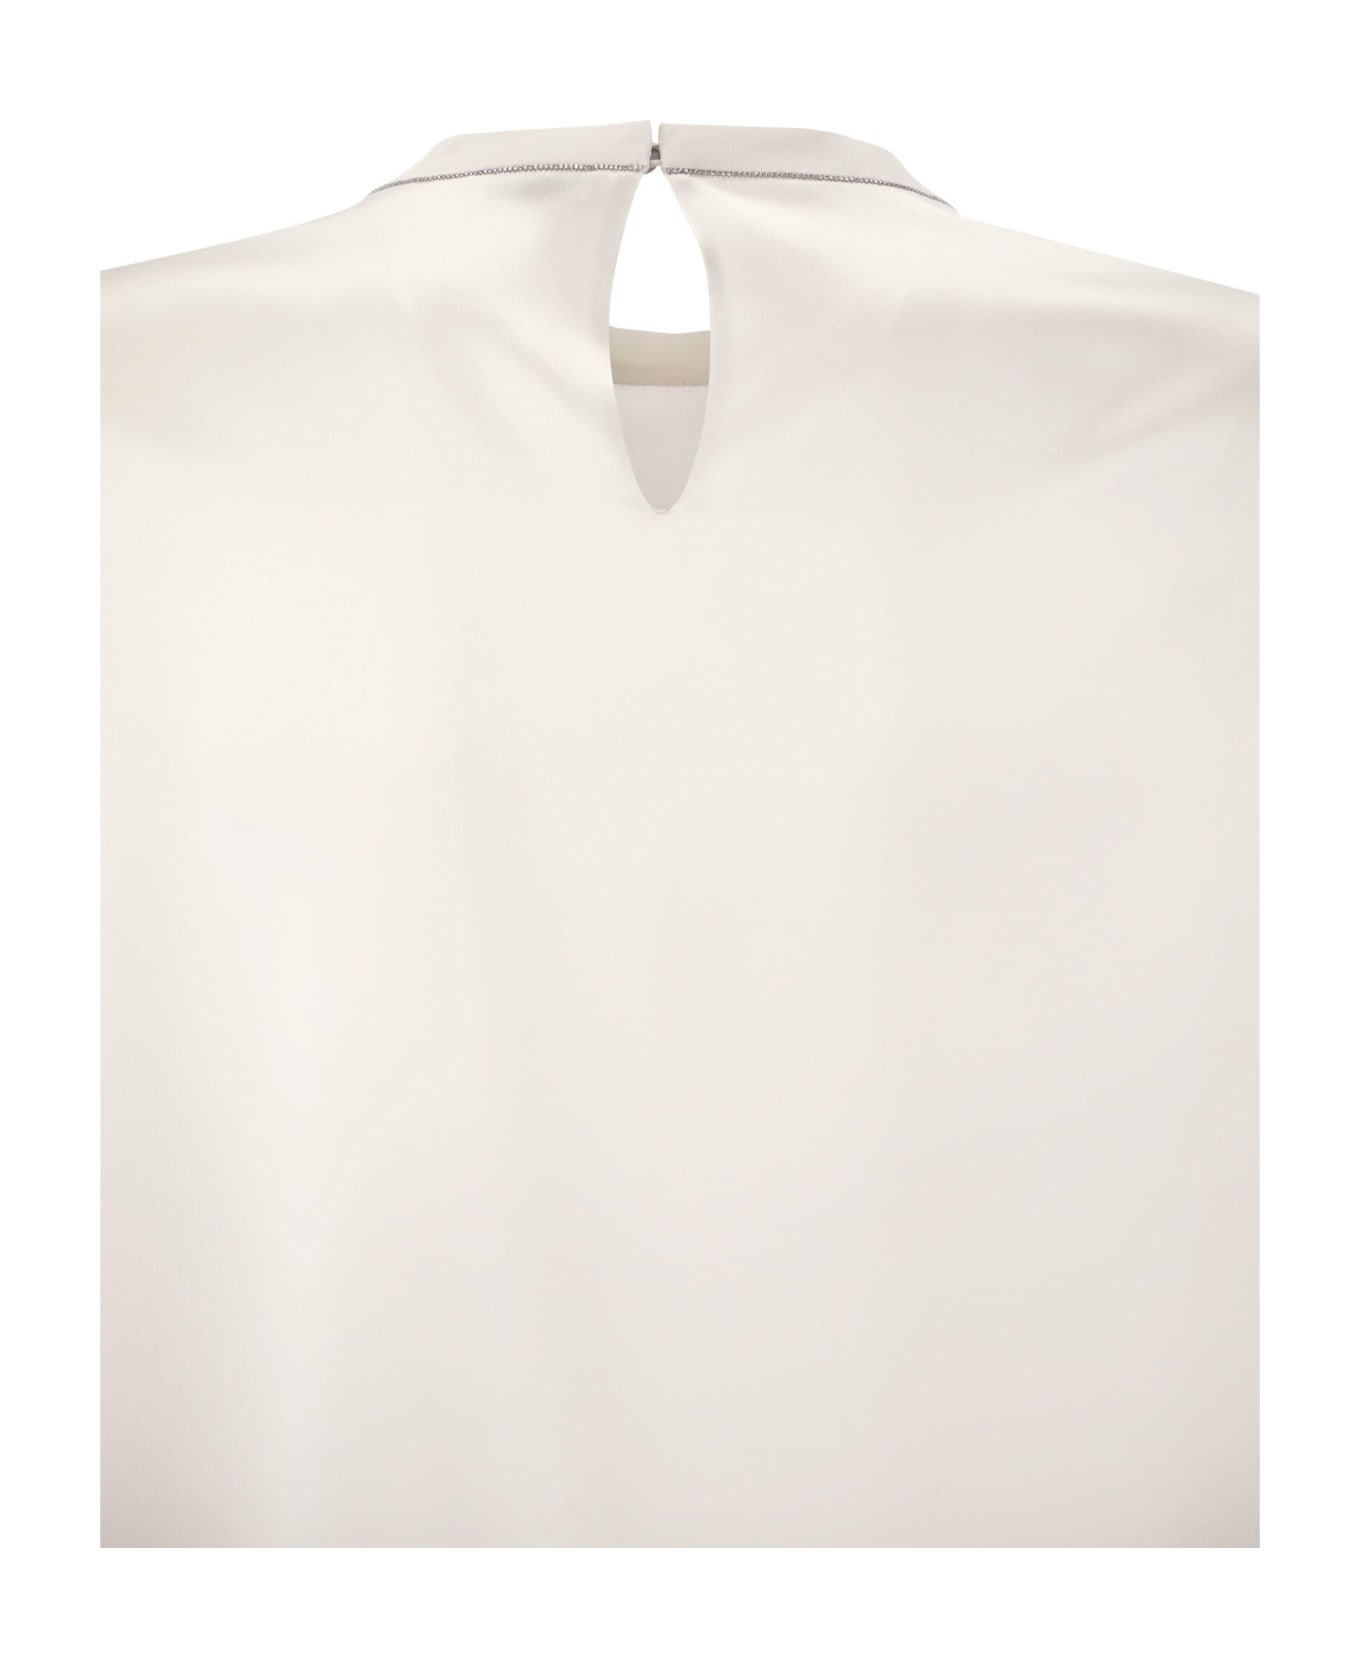 Brunello Cucinelli Silk T-shirt With Monili Details - White